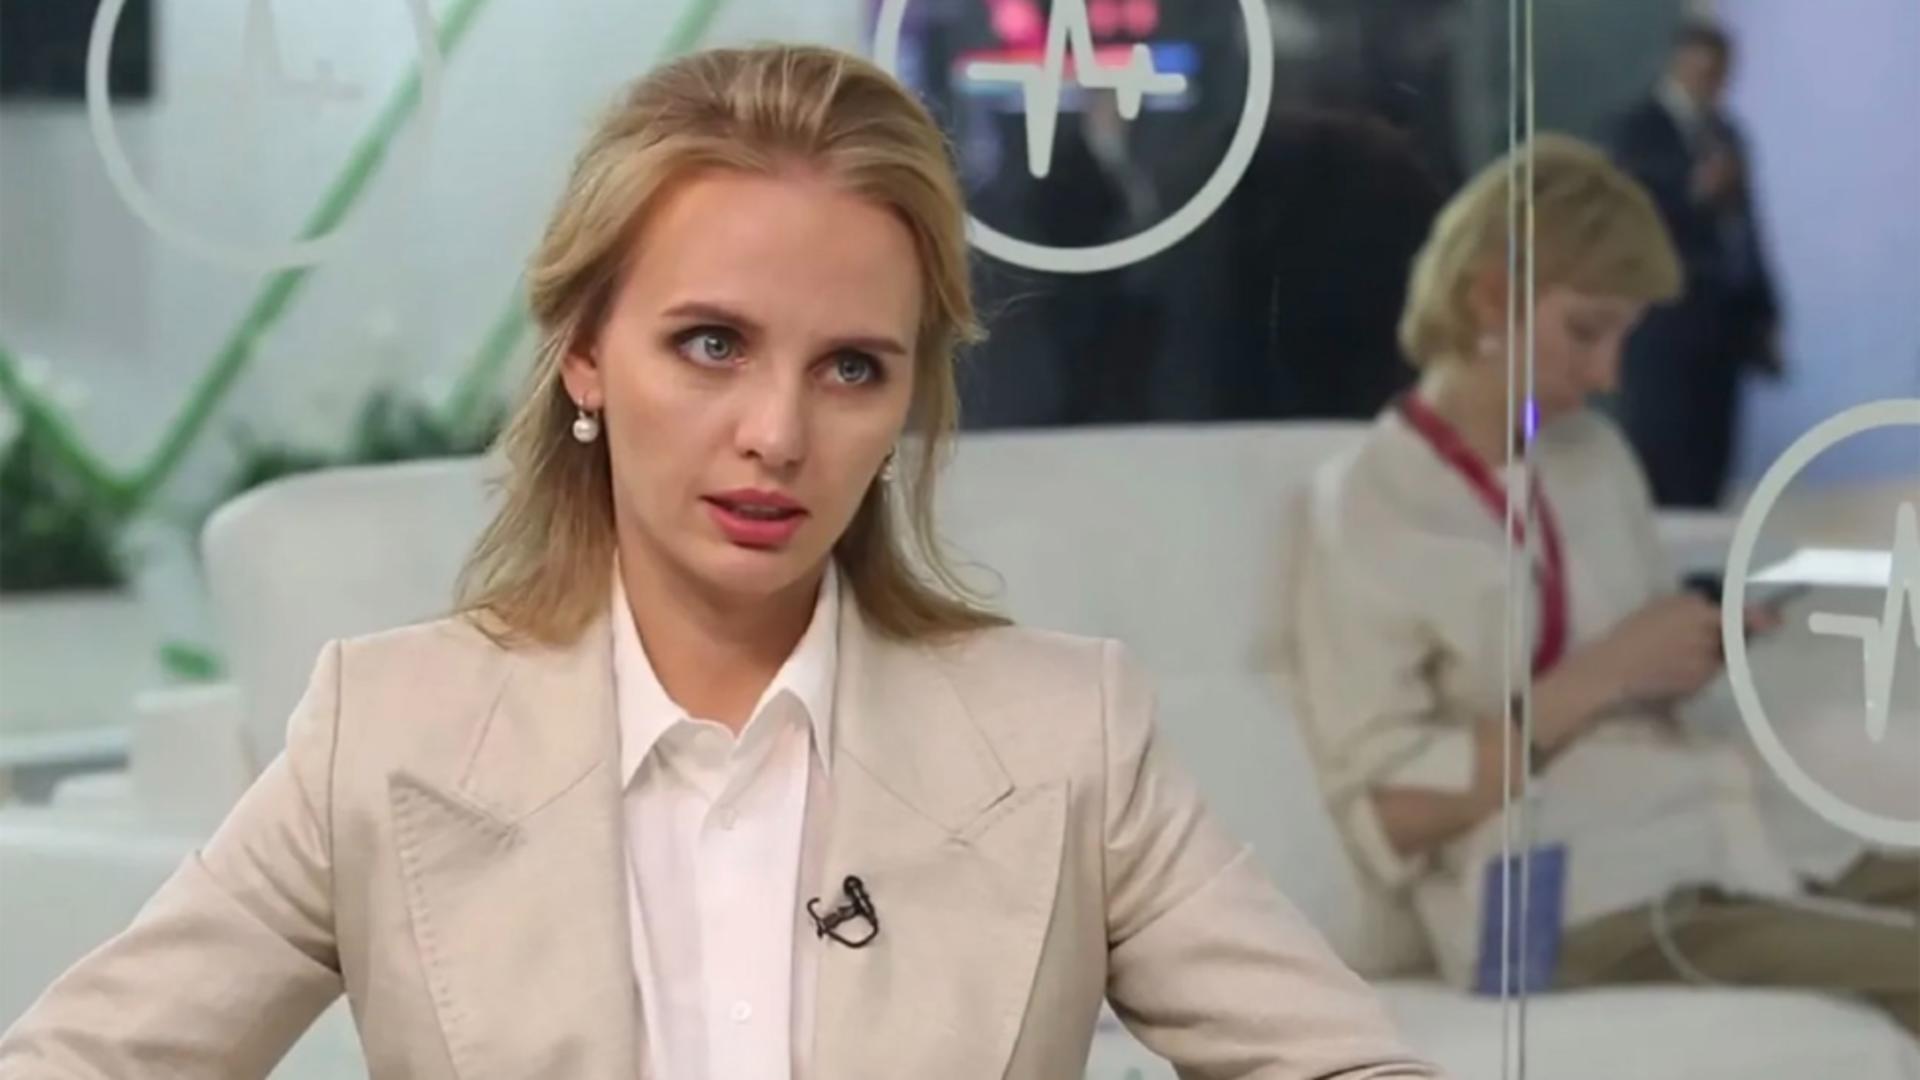 Fiica lui Putin iese la rampă cu o declarație controversată: Pentru noi, valoarea vieții umane este o valoare supremă